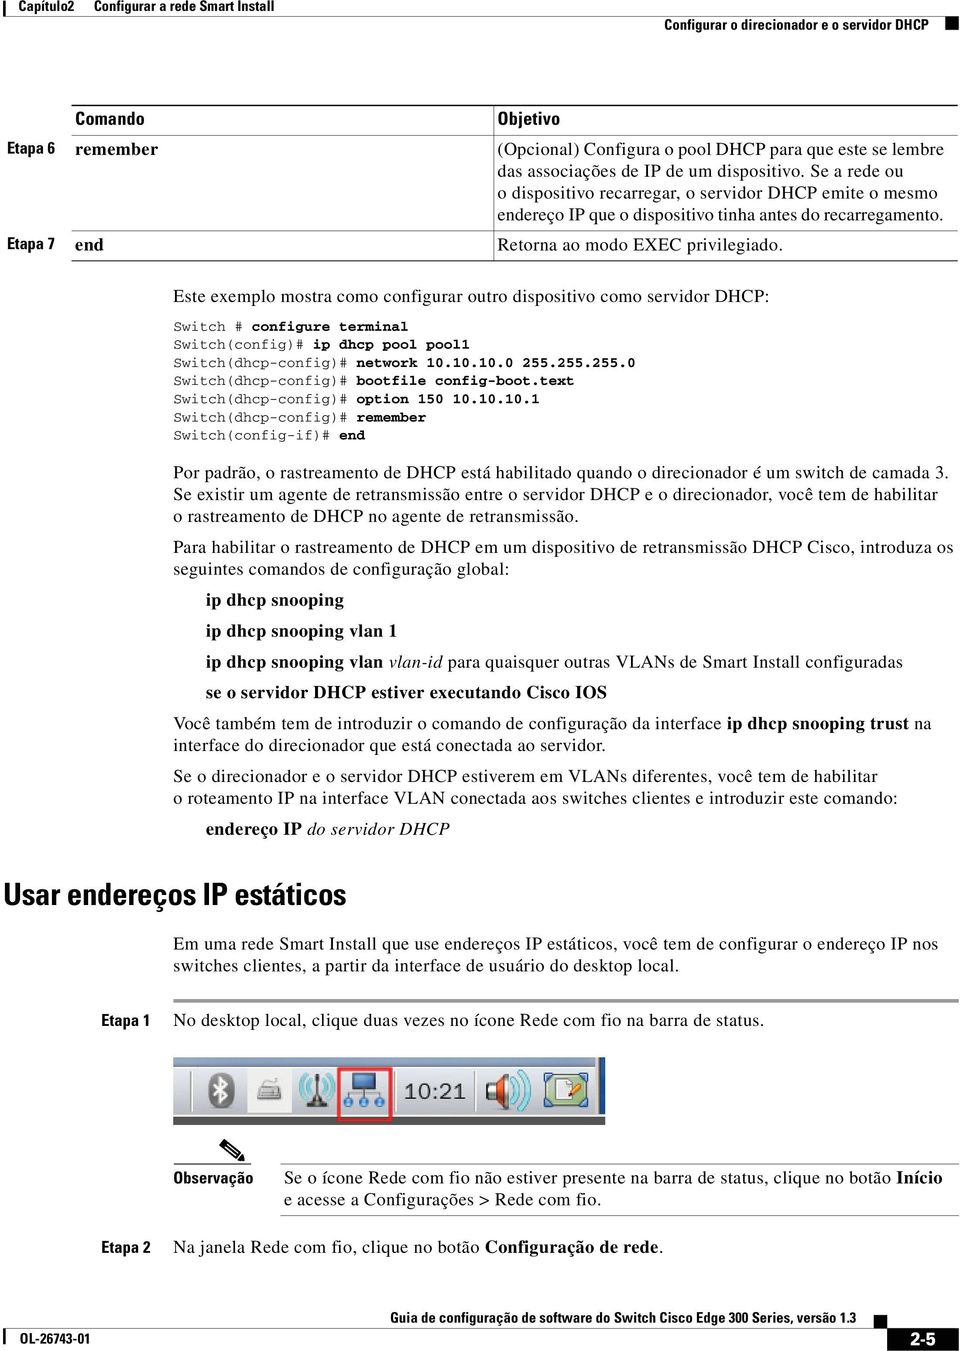 Este exemplo mostra como configurar outro dispositivo como servidor DHCP: Switch # configure terminal Switch(config)# ip dhcp pool pool1 Switch(dhcp-config)# network 10.10.10.0 255.